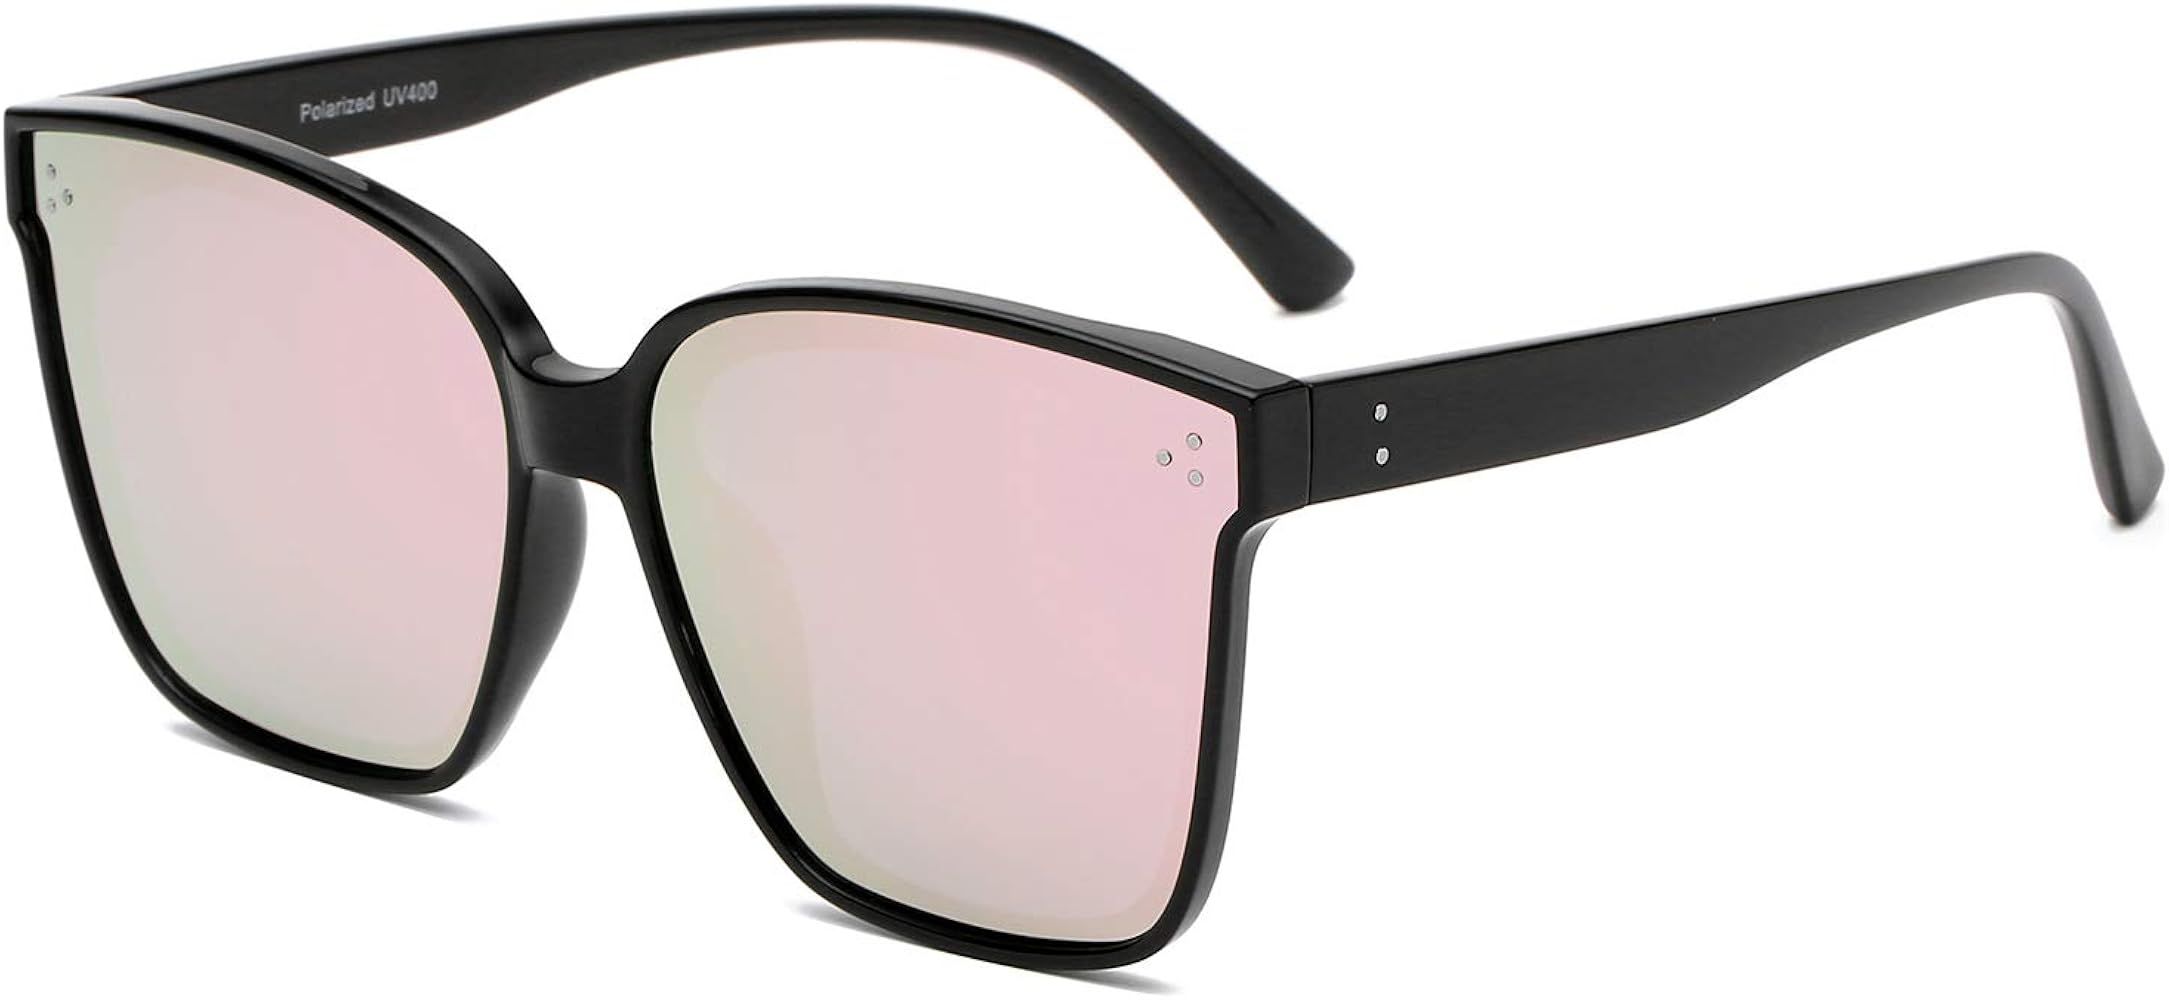 DUSHINE Oversized Square Polarized Sunglasses For Women With Rivets Retro Vintage UV Protection | Amazon (US)